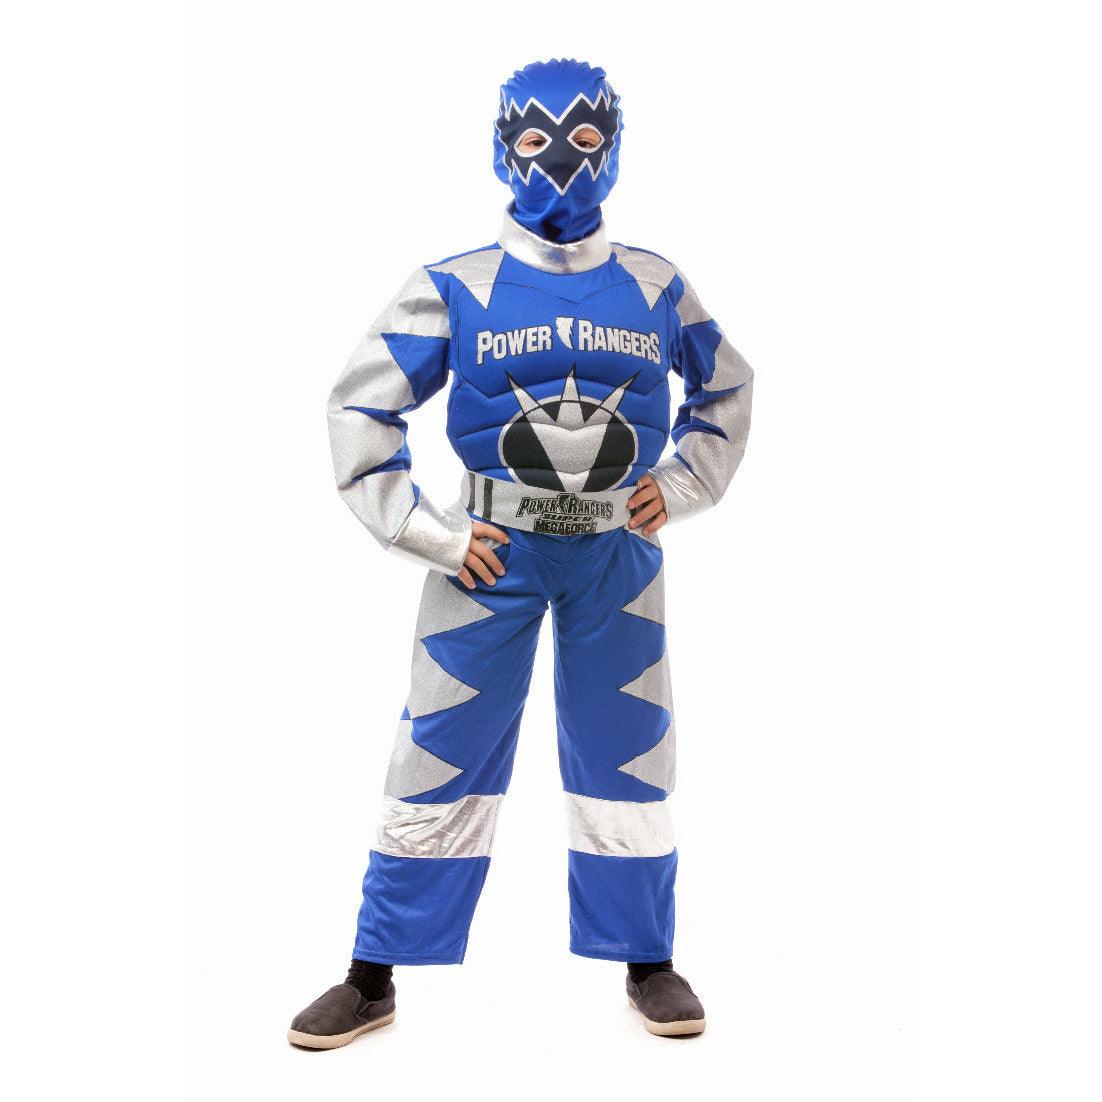 Power Ranger Costume - Blue - Ourkids - M&A